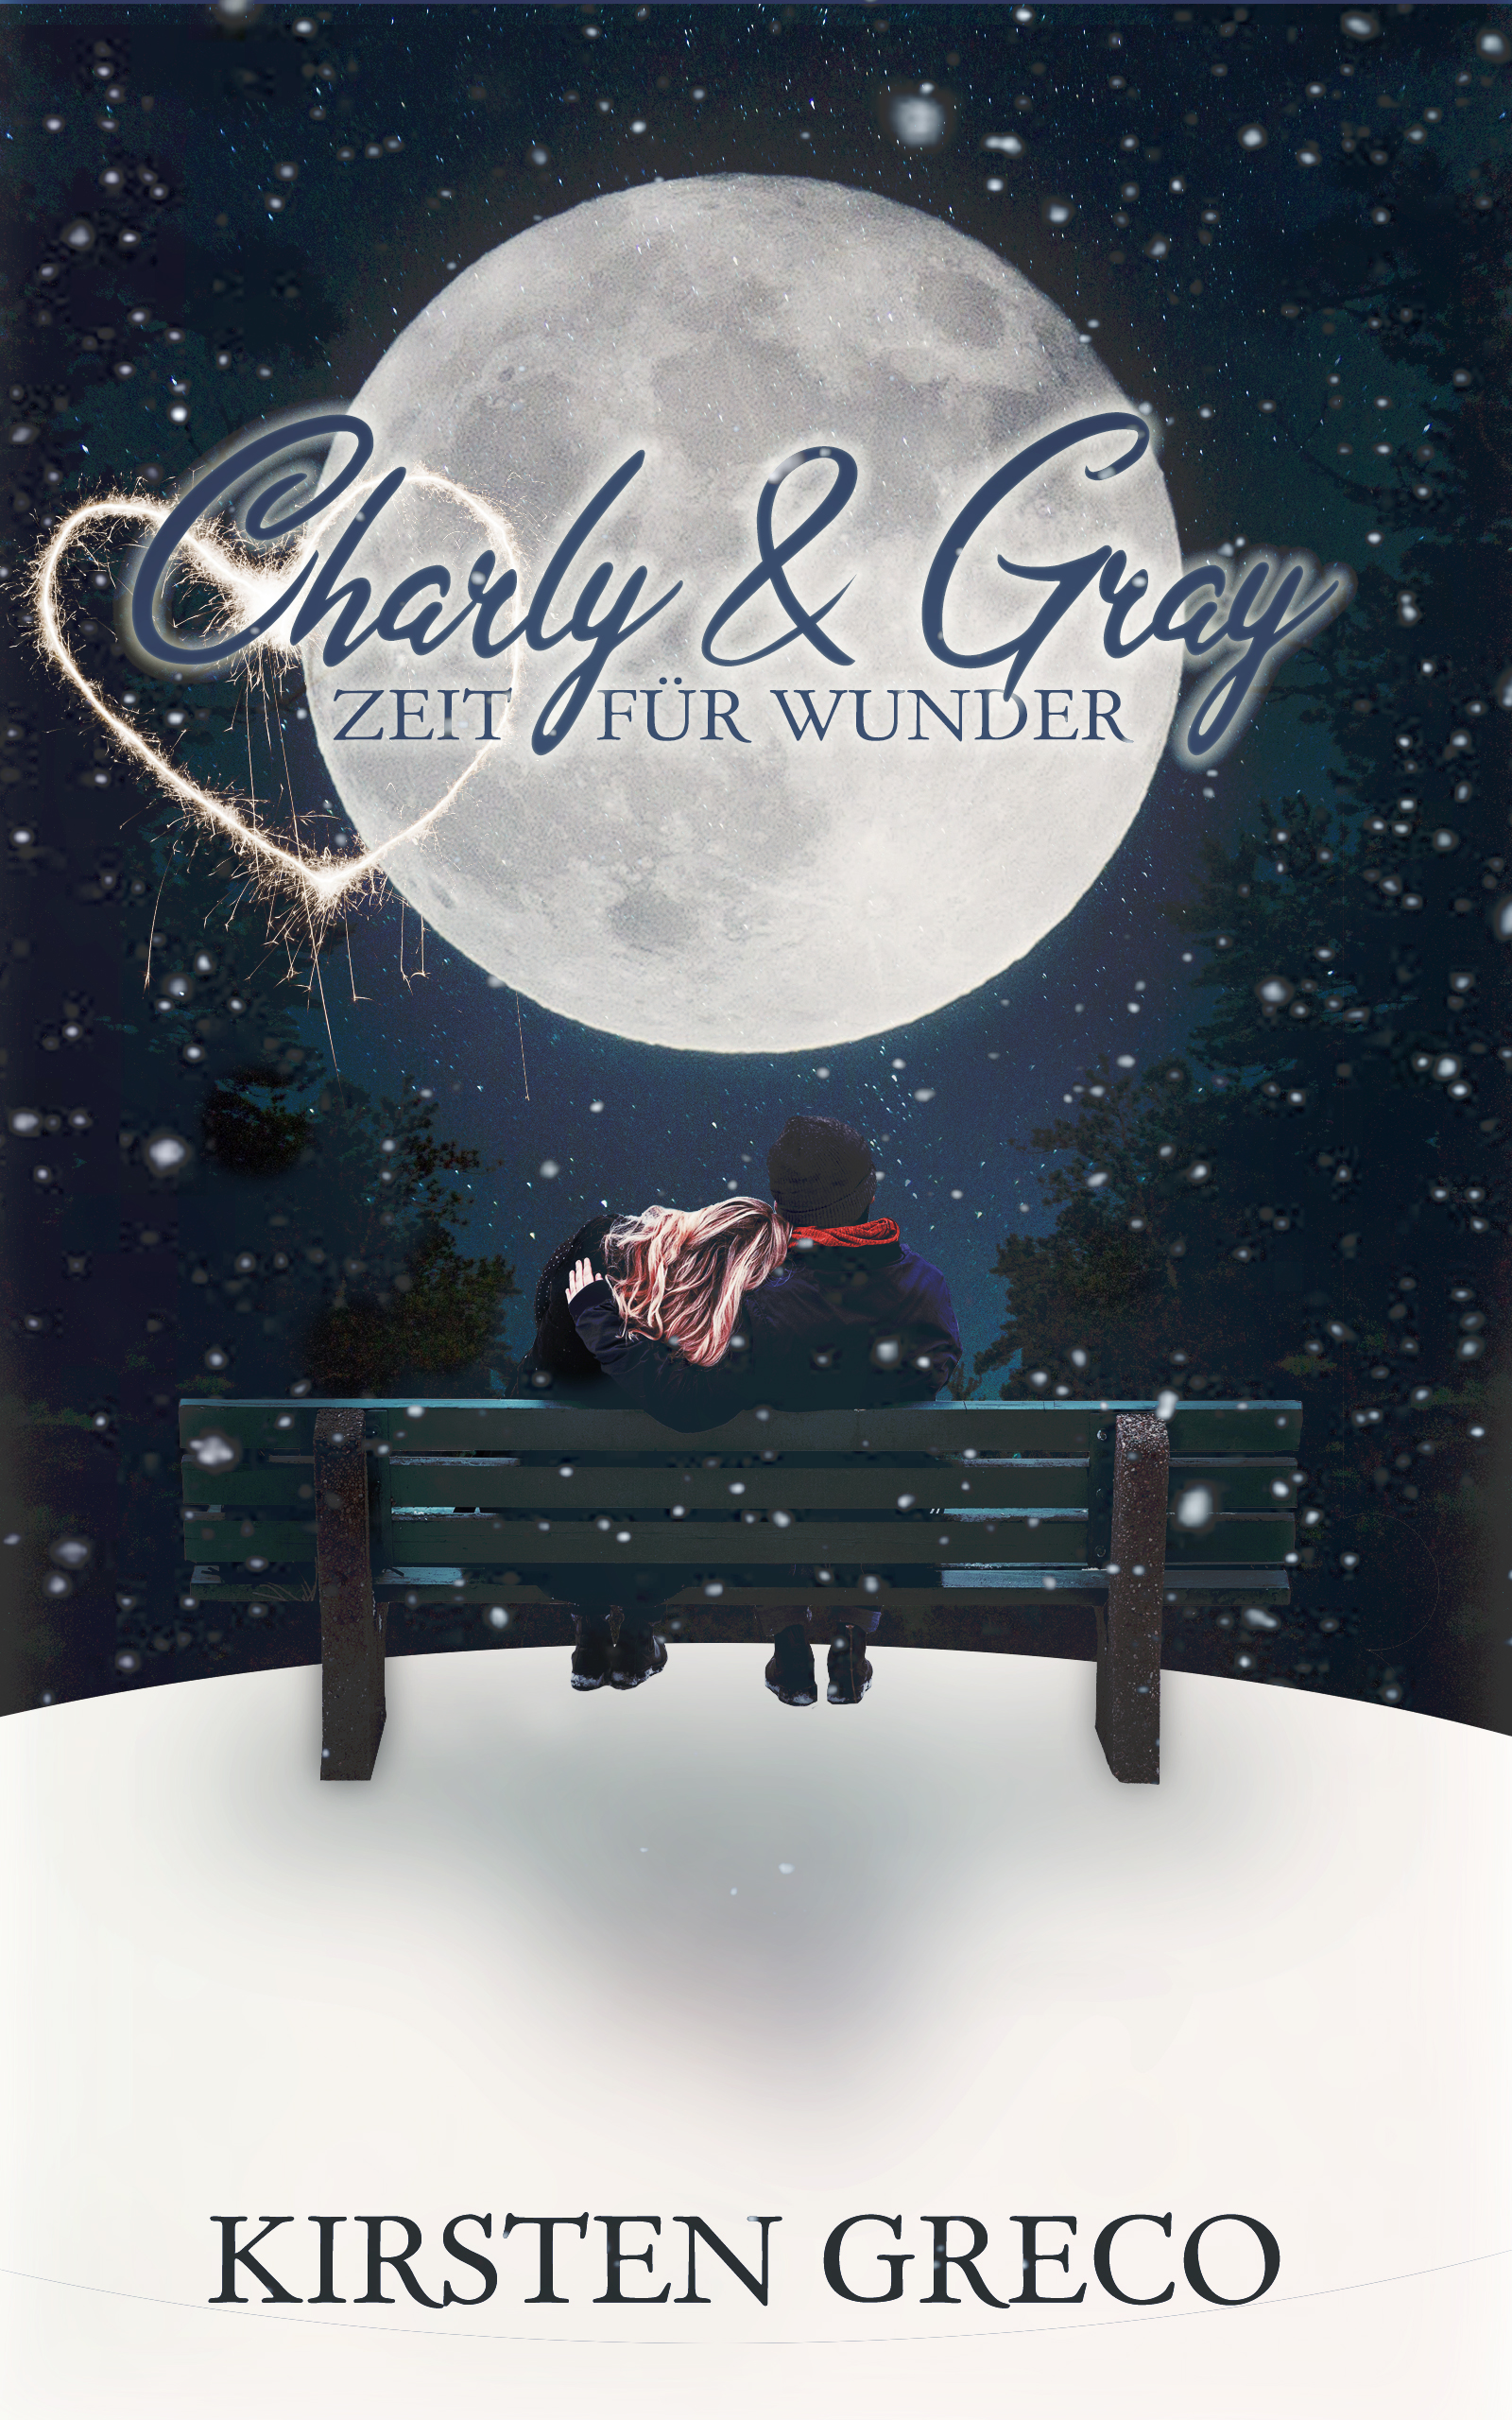 Charly & Gray – Zeit für Wunder Profilbild